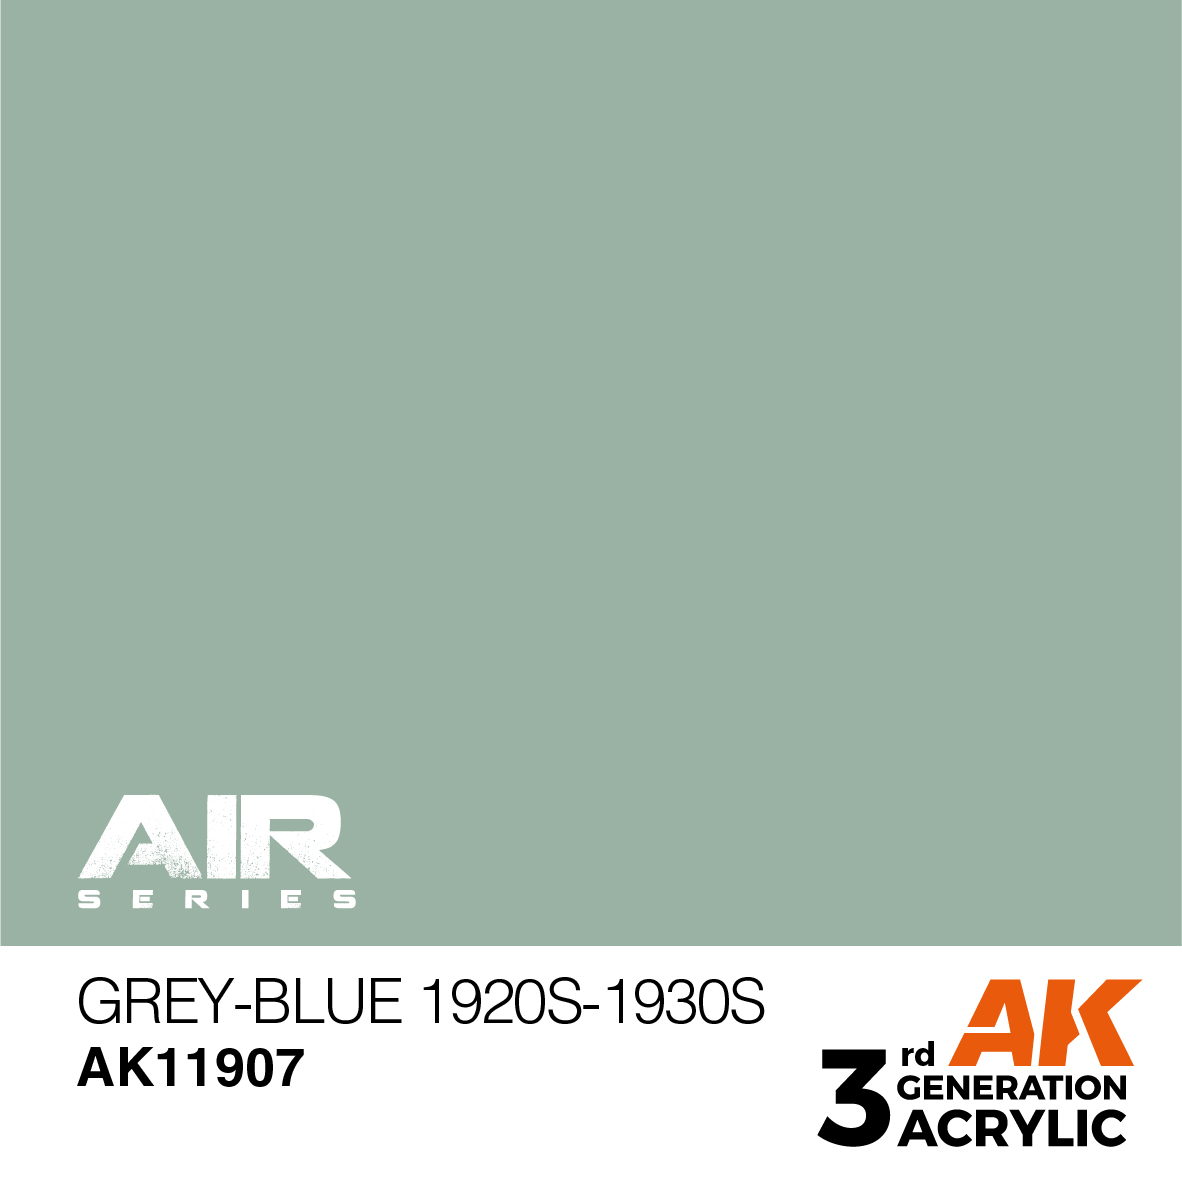 Grey-Blue 1920s-1930s – AIR